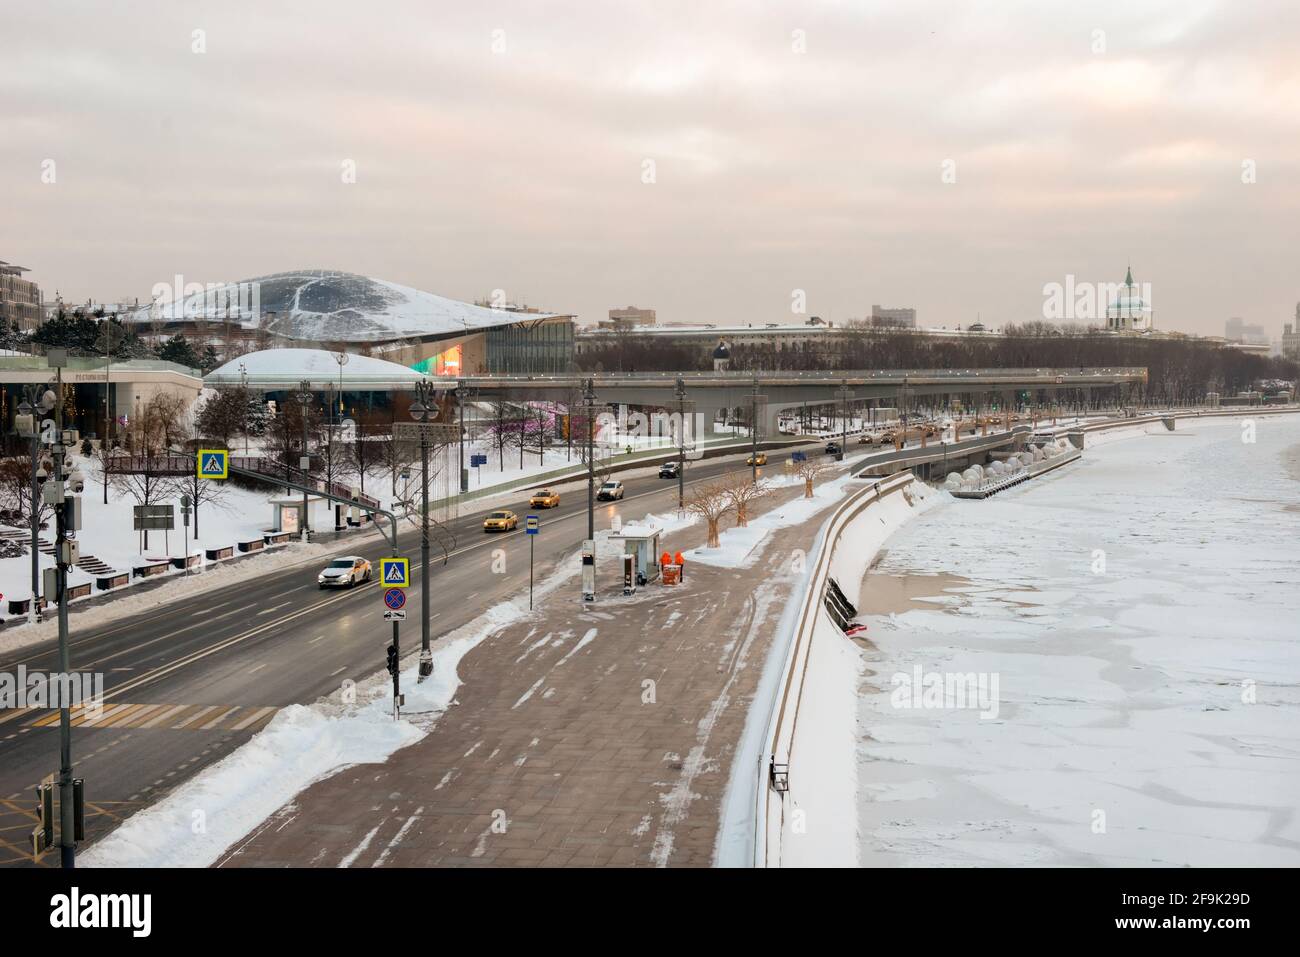 Moscou, Russie - 17 janvier 2021 : vue du remblai Moskvoretskaya, des voitures et d'un gratte-ciel sur le remblai Kotelnicheskaya sur un morni hivernal gelé Banque D'Images